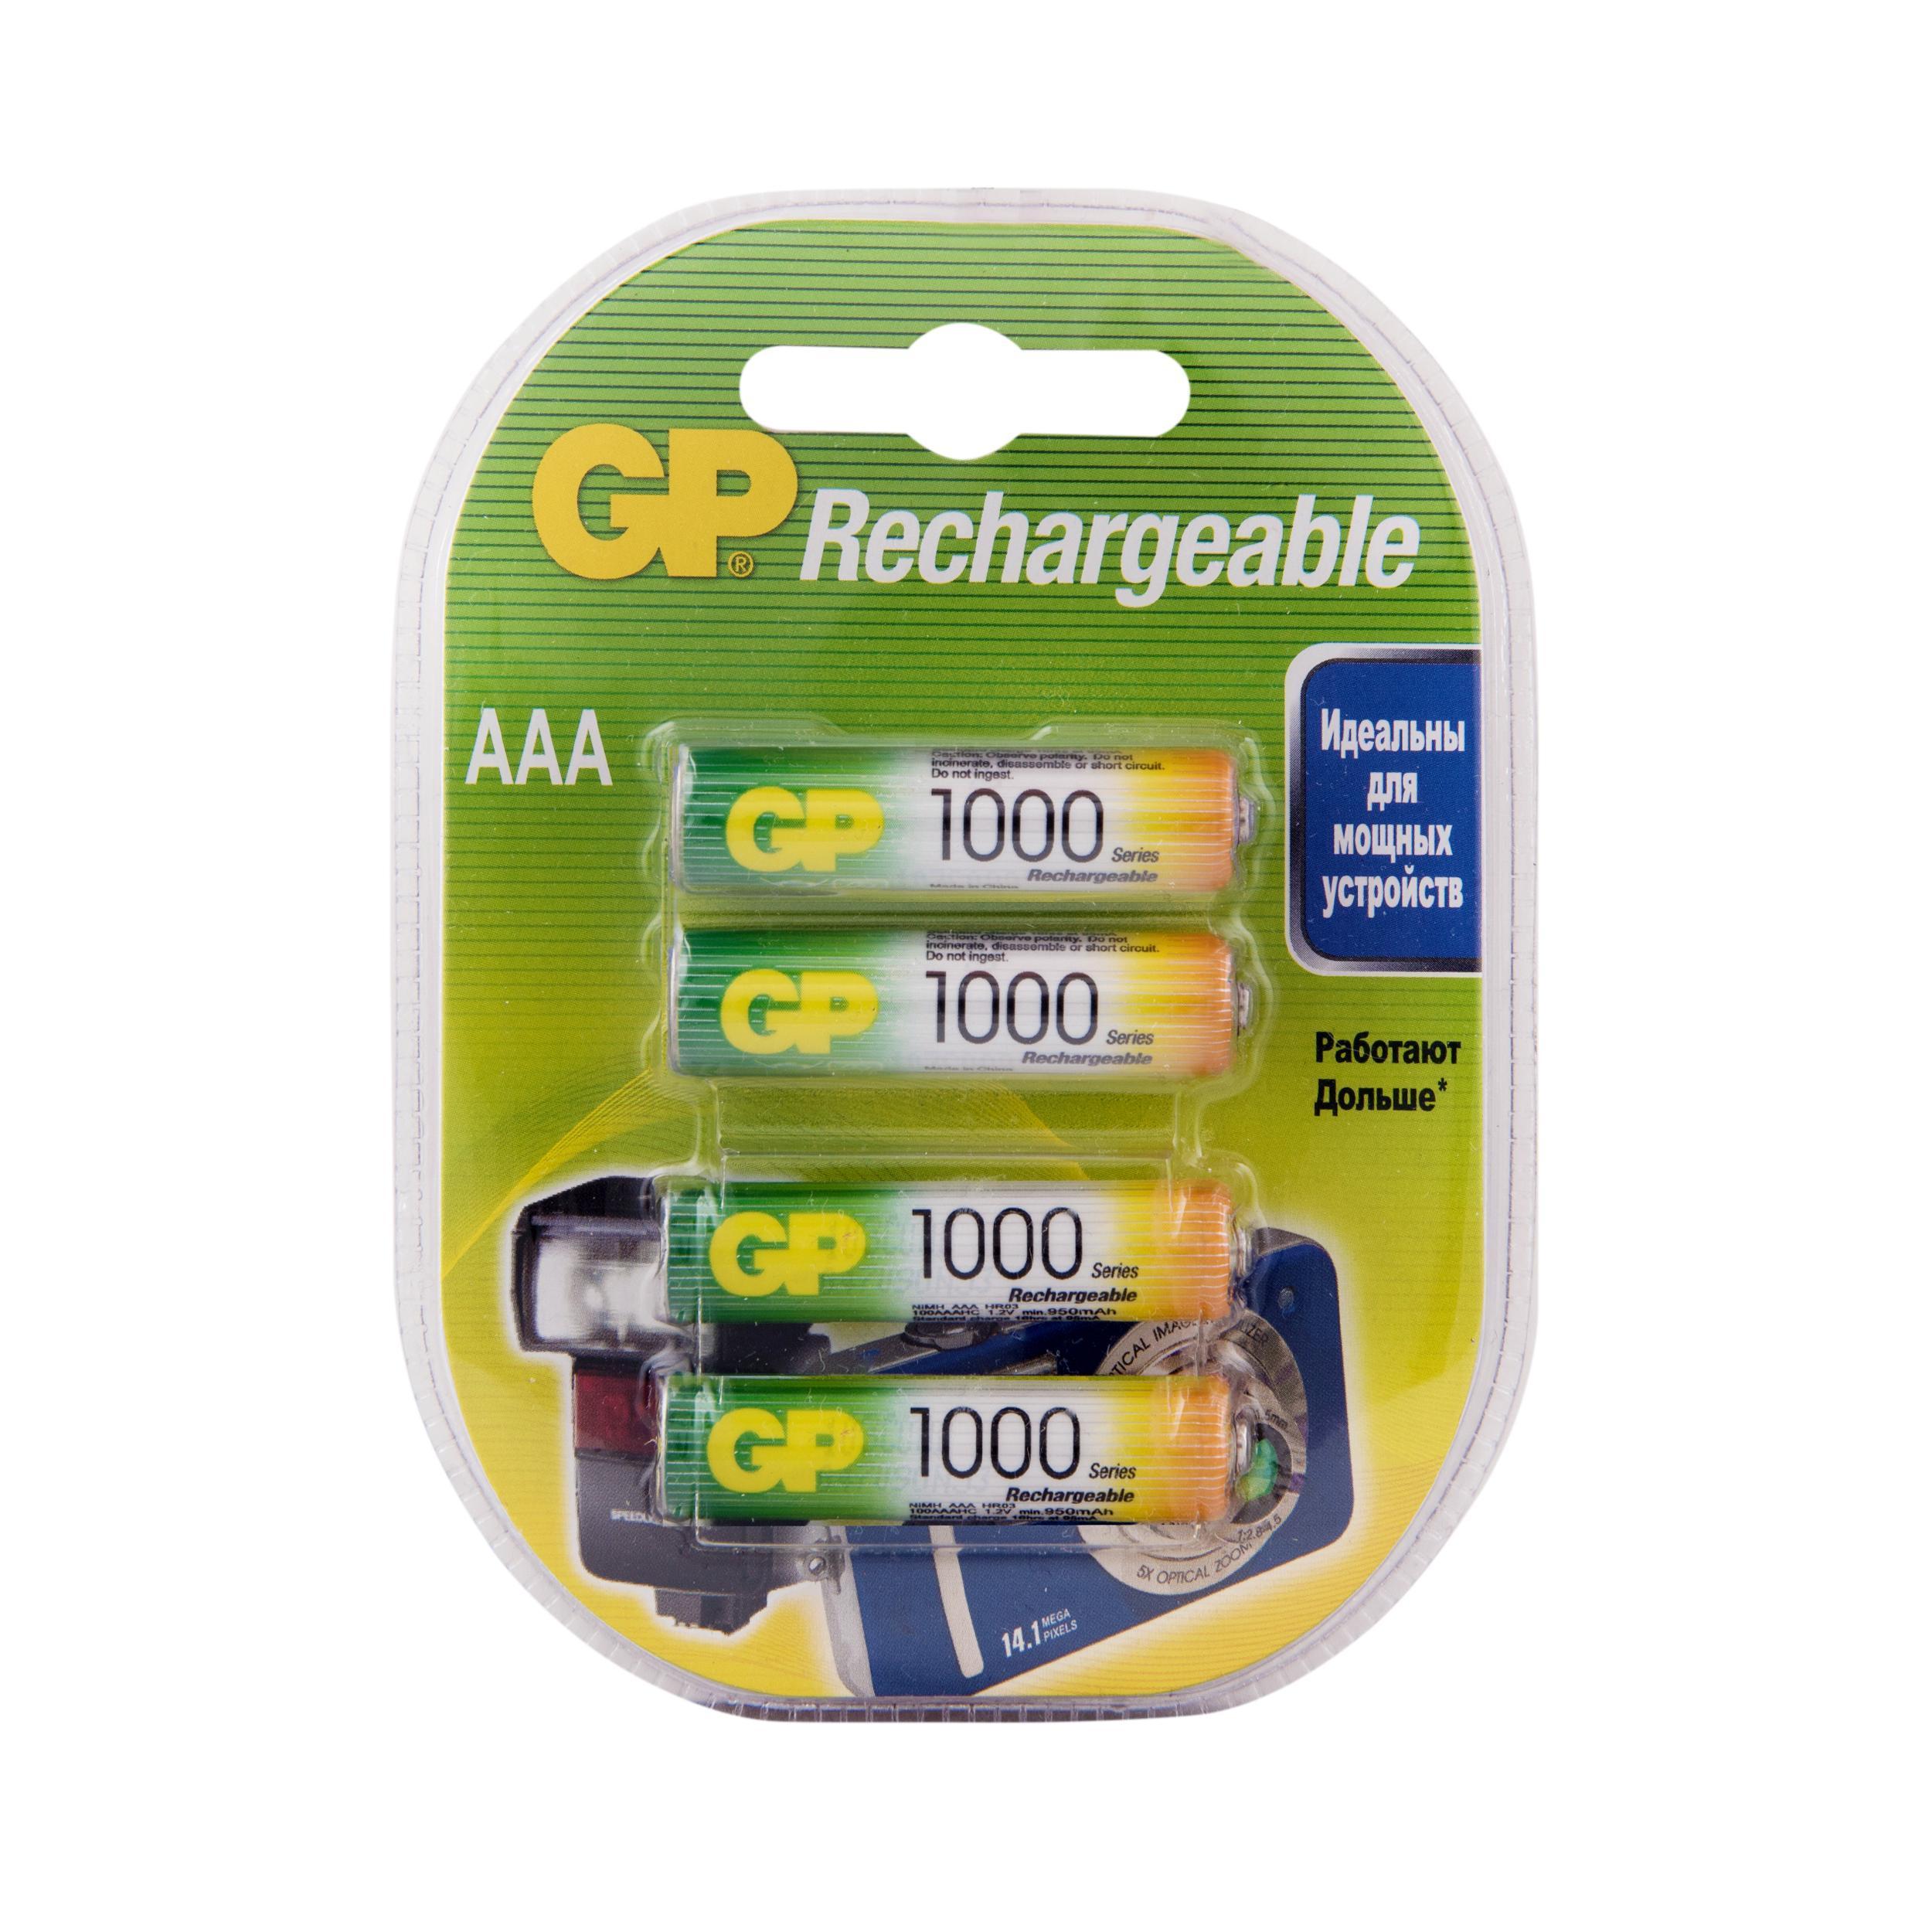 Аккумуляторы GP Batteries перезаряжаемые, AAA, 930 мАч, 4 шт перезаряжаемые аккумуляторы gp